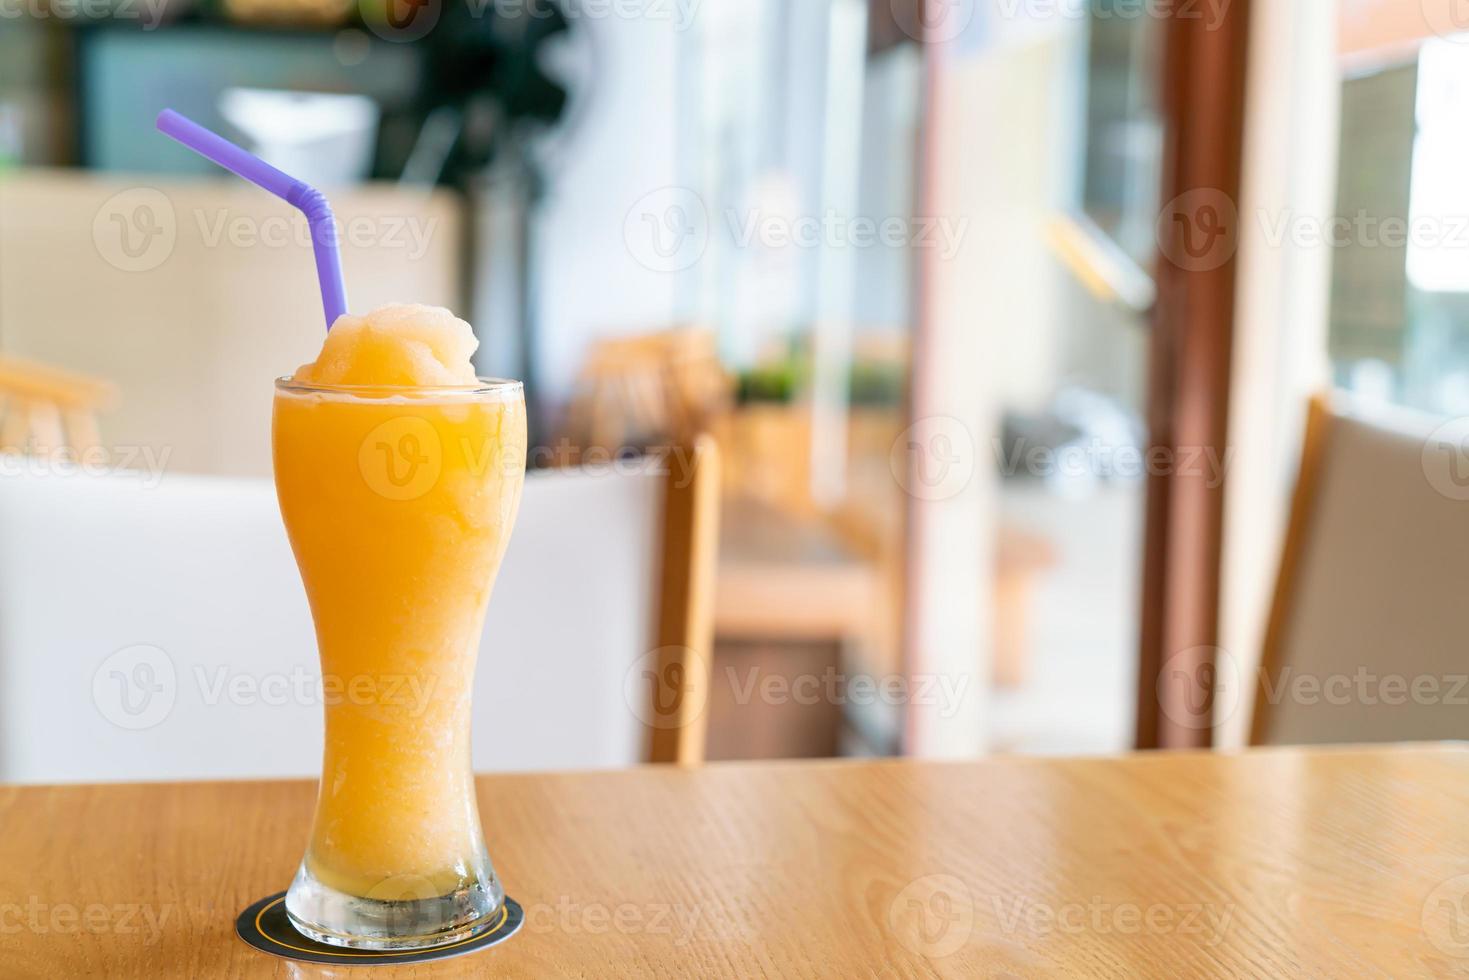 bicchiere di frullato di miscela di succo d'arancia nel ristorante caffetteria foto